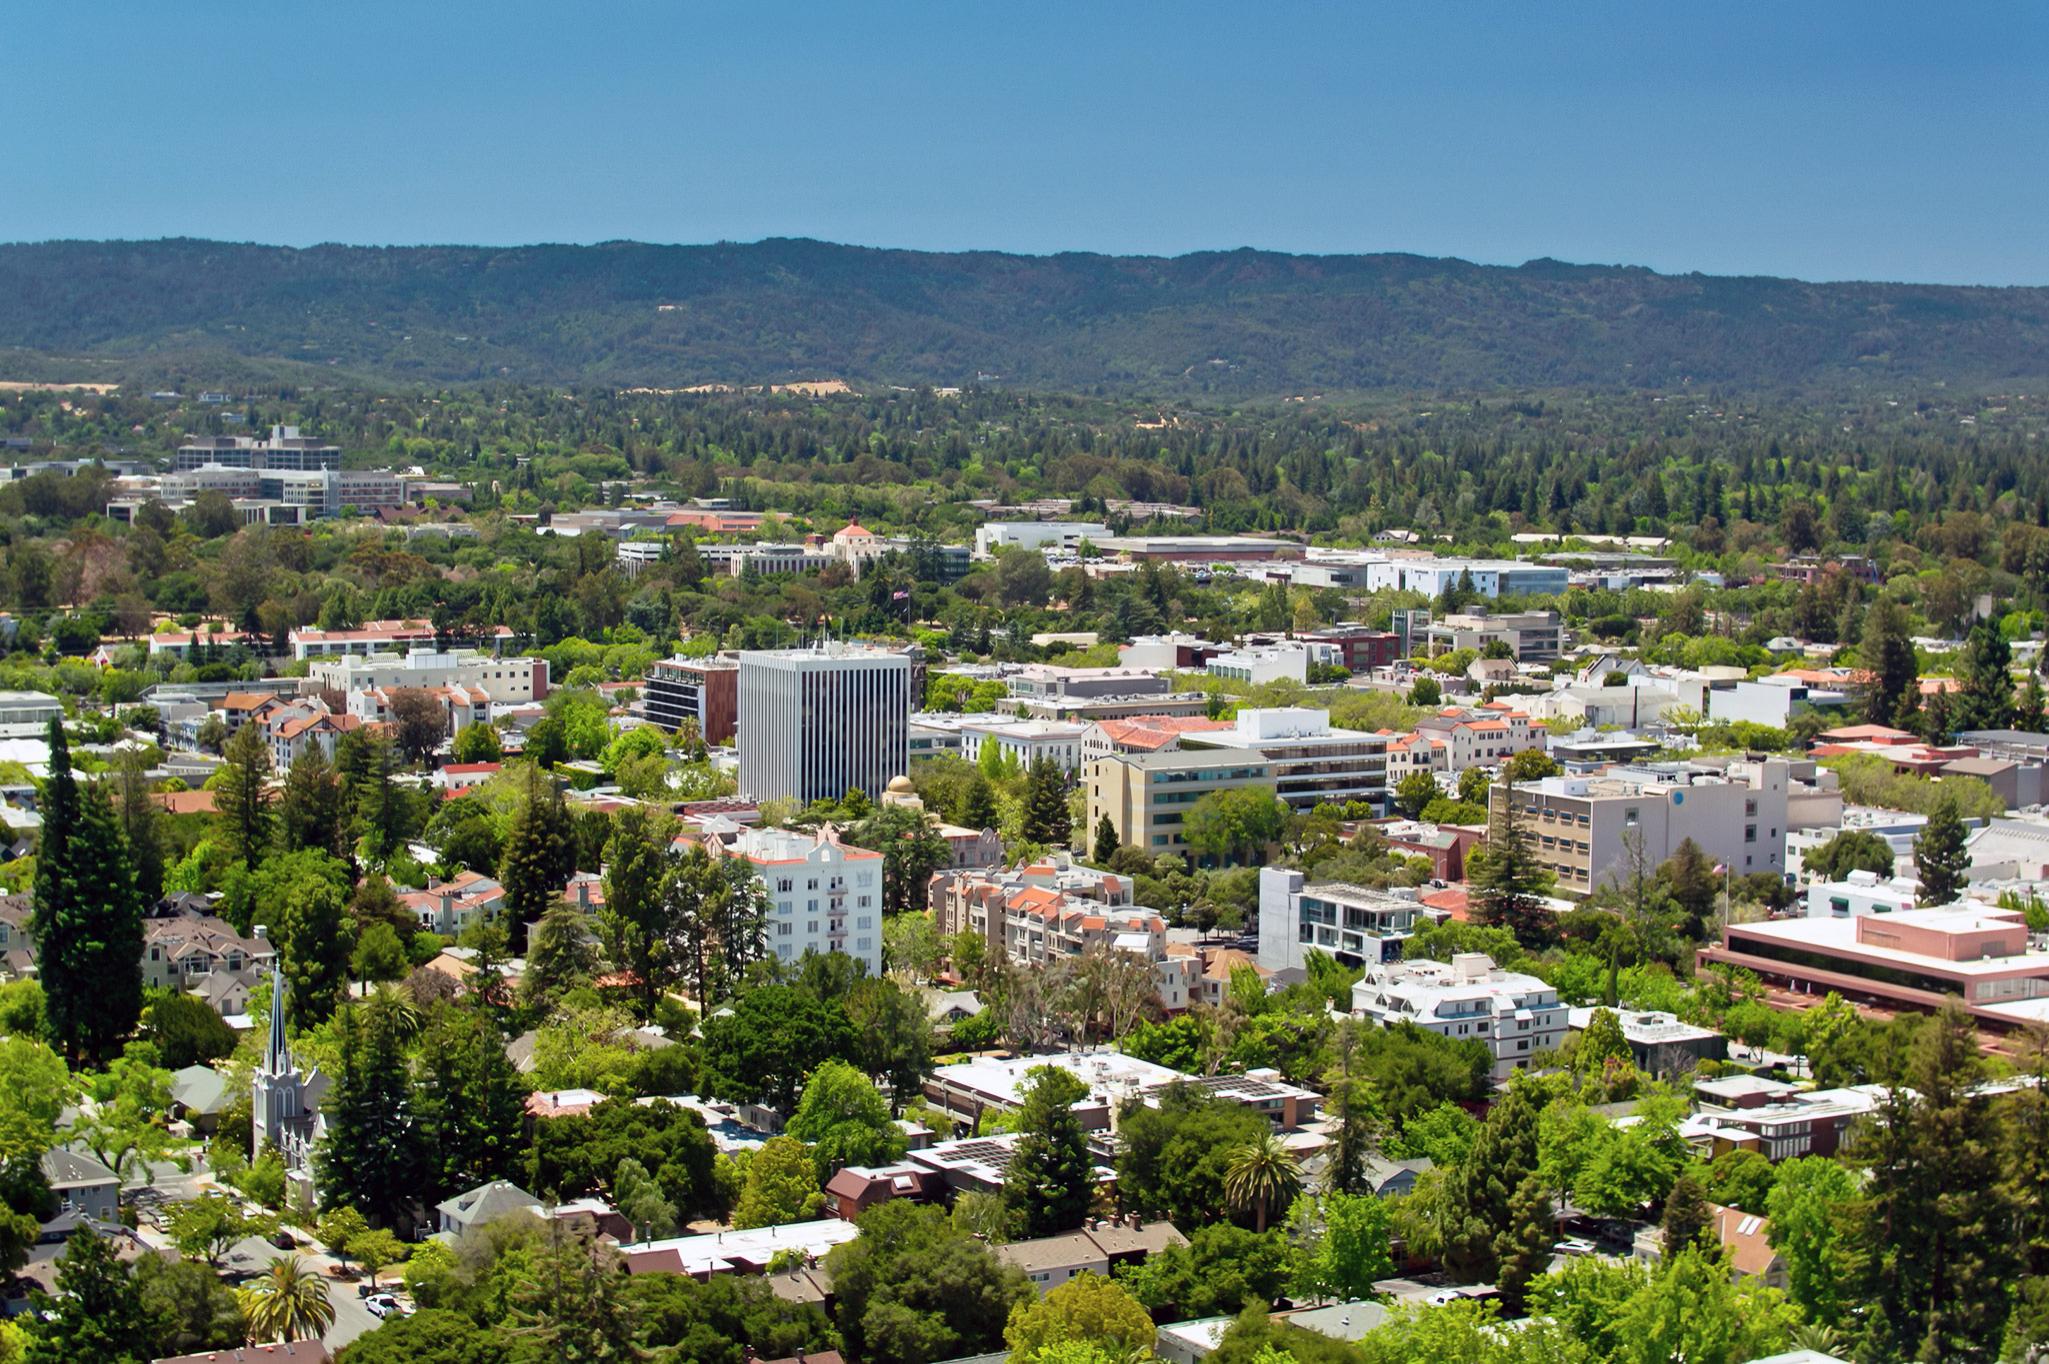 Palo Alto scenic view near top home builder community